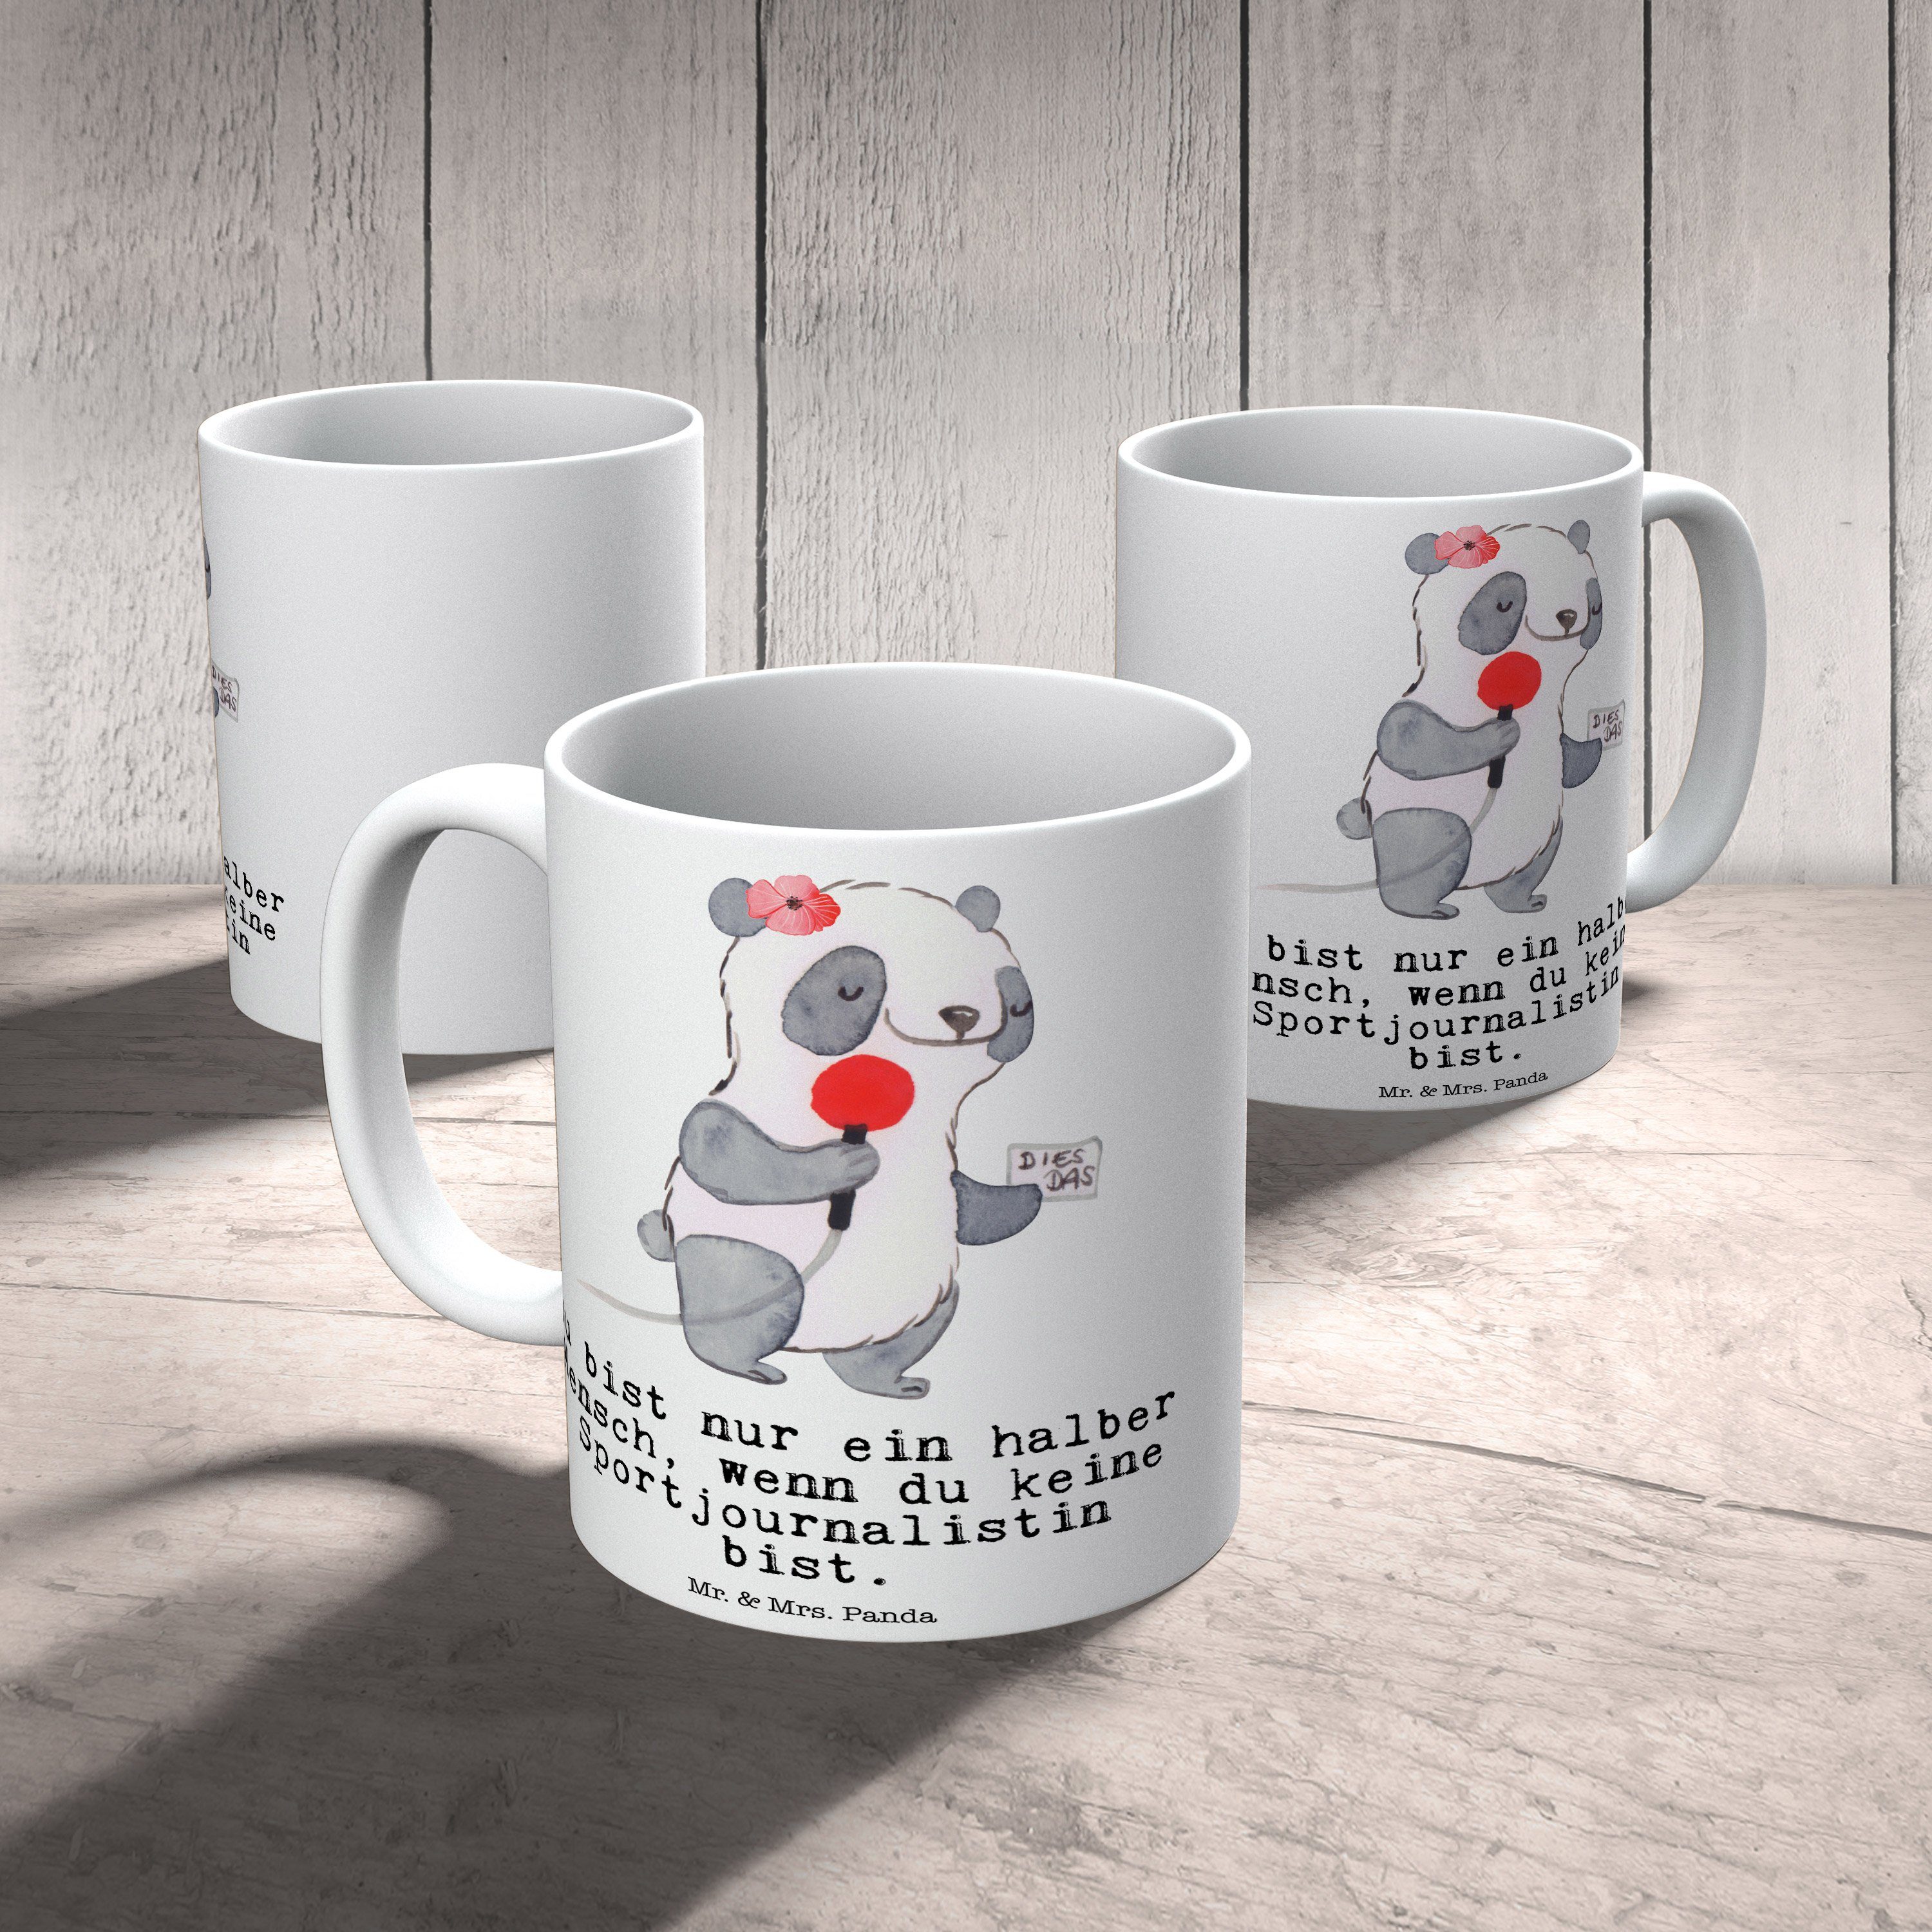 Mr. & Mrs. Panda - Tasse, Geschenk Weiß mit Geschenk, Herz Reporte, - Sportjournalistin Tasse Keramik